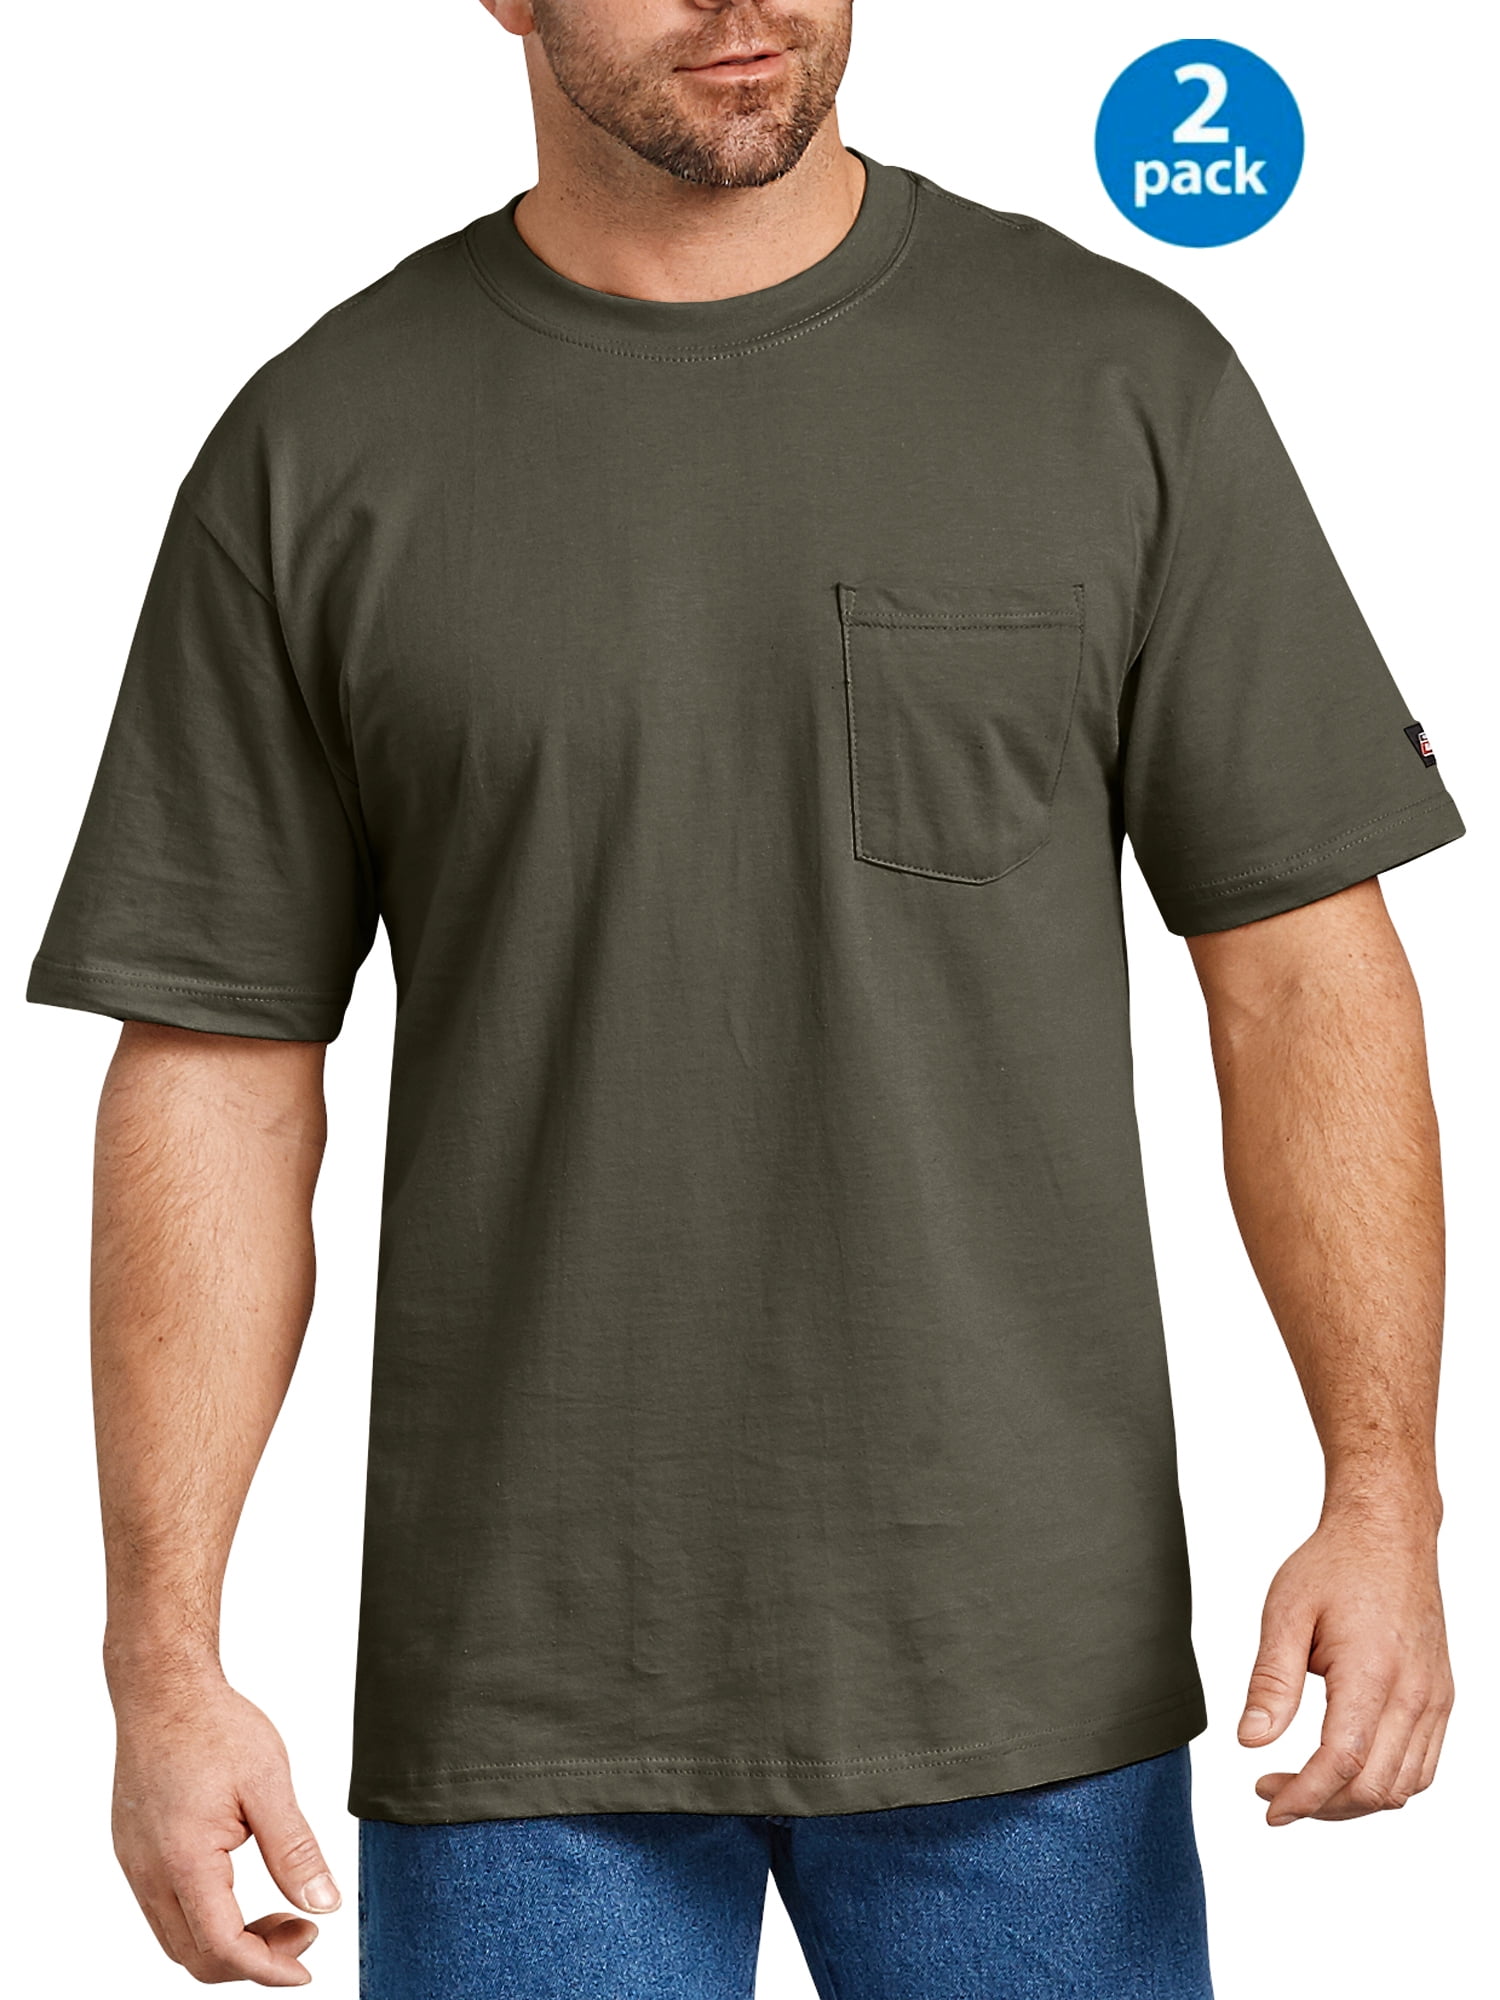 Big Men's Short Sleeve Heavy Weight Pocket T-Shirt, 2 Pack - Walmart.com